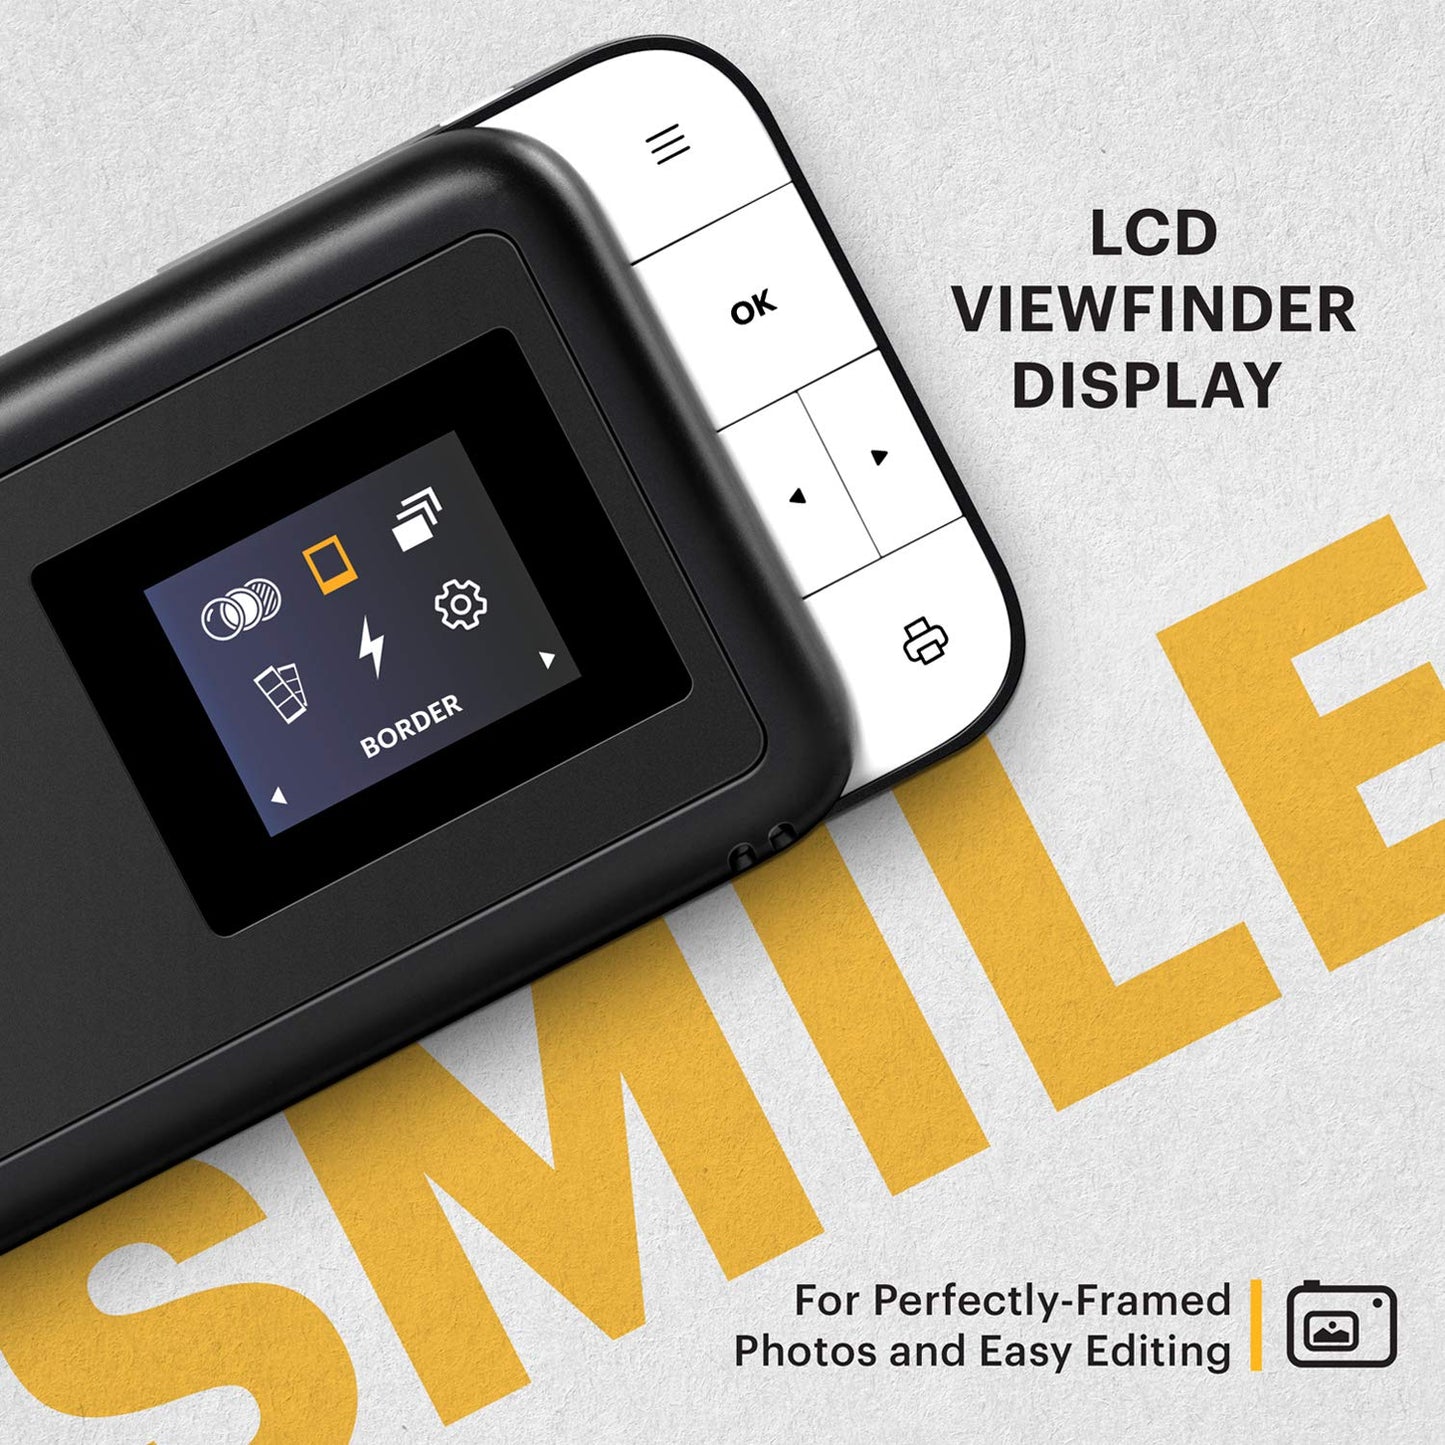 كاميرا كوداك Smile طباعة فورية رقمية-كاميرا 10 ميجابكسل مفتوحة الشريحة w/2x3 طابعة ZINK ، شاشة ، تركيز ثابت ، فلاش تلقائي وتحرير الصور-أسود/أبيض